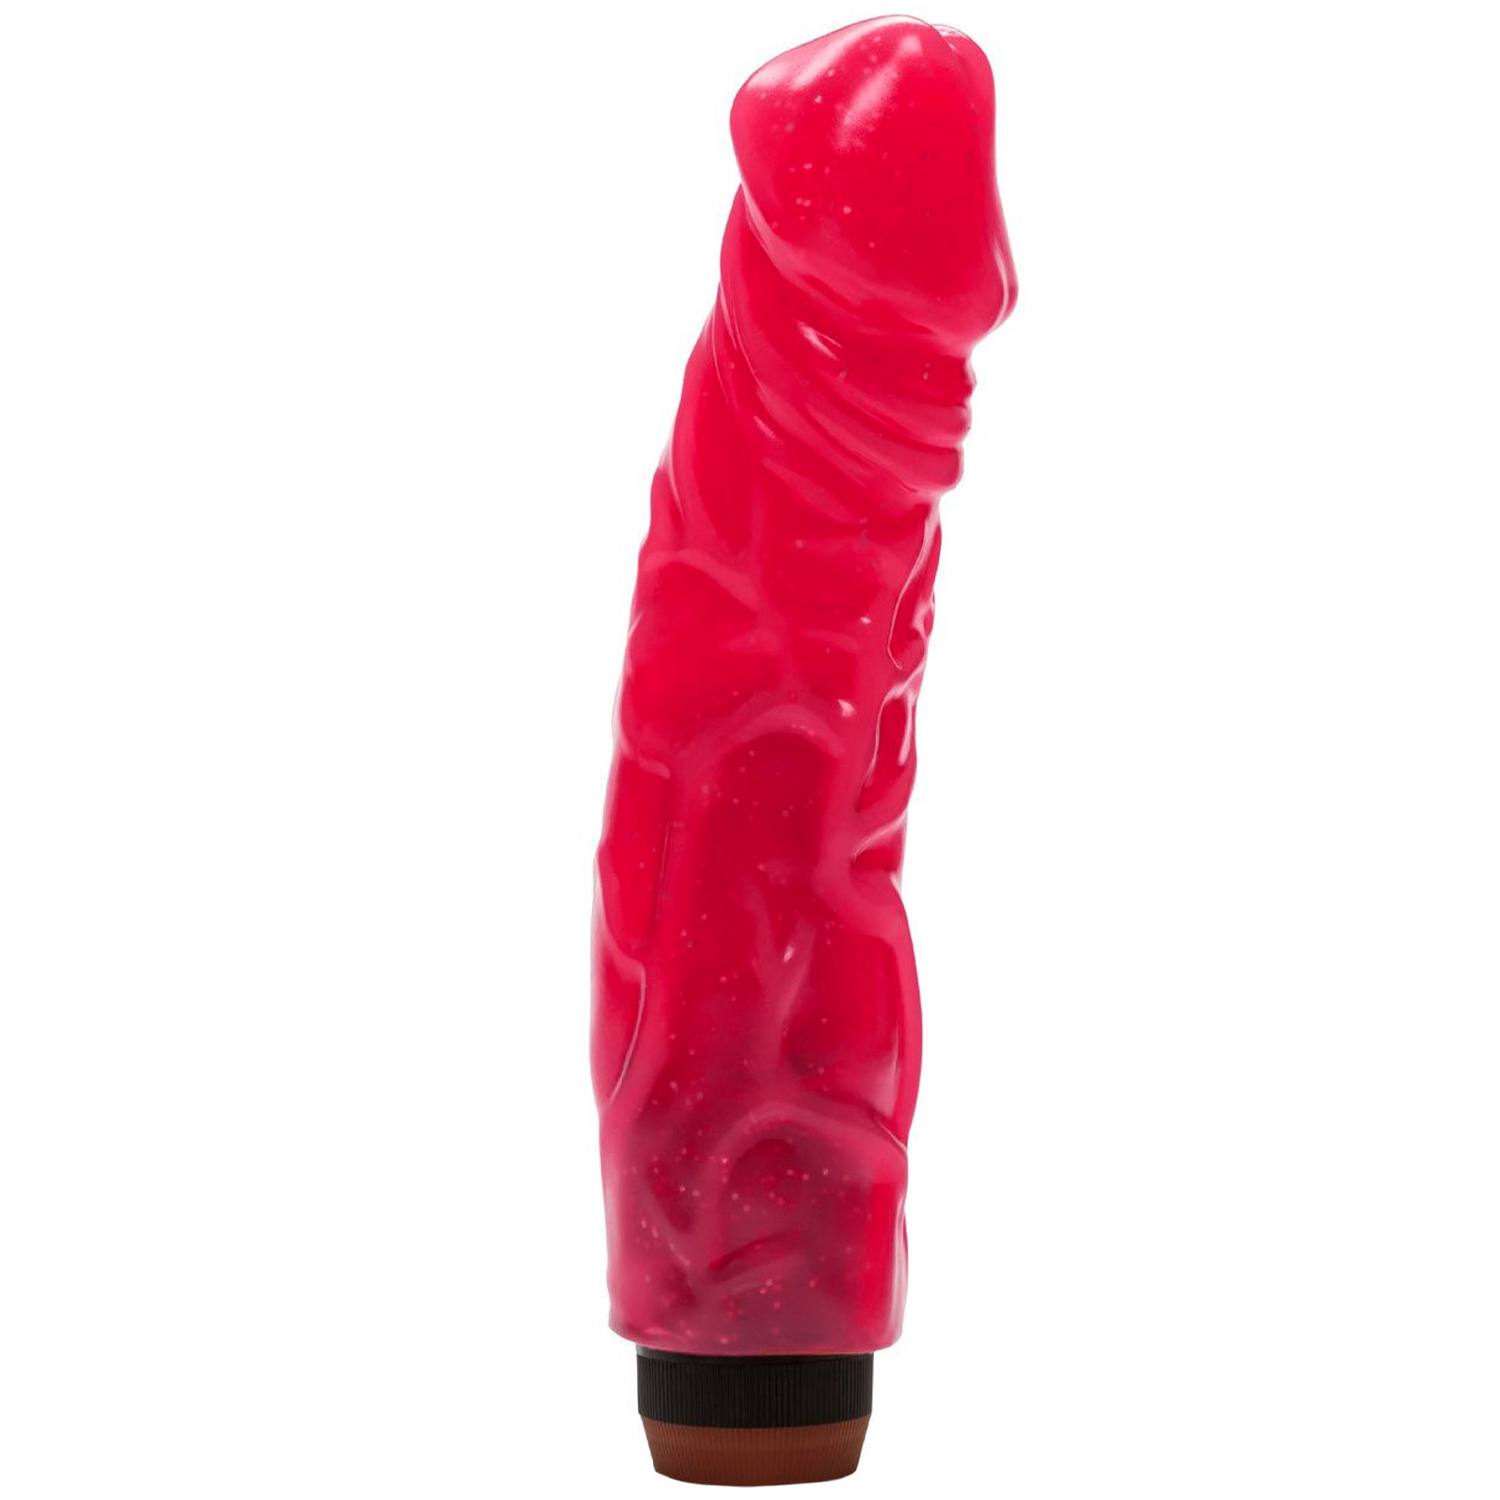 CalExotics Hot Pinks Devil Dick Dildo Vibrator    - Pink thumbnail